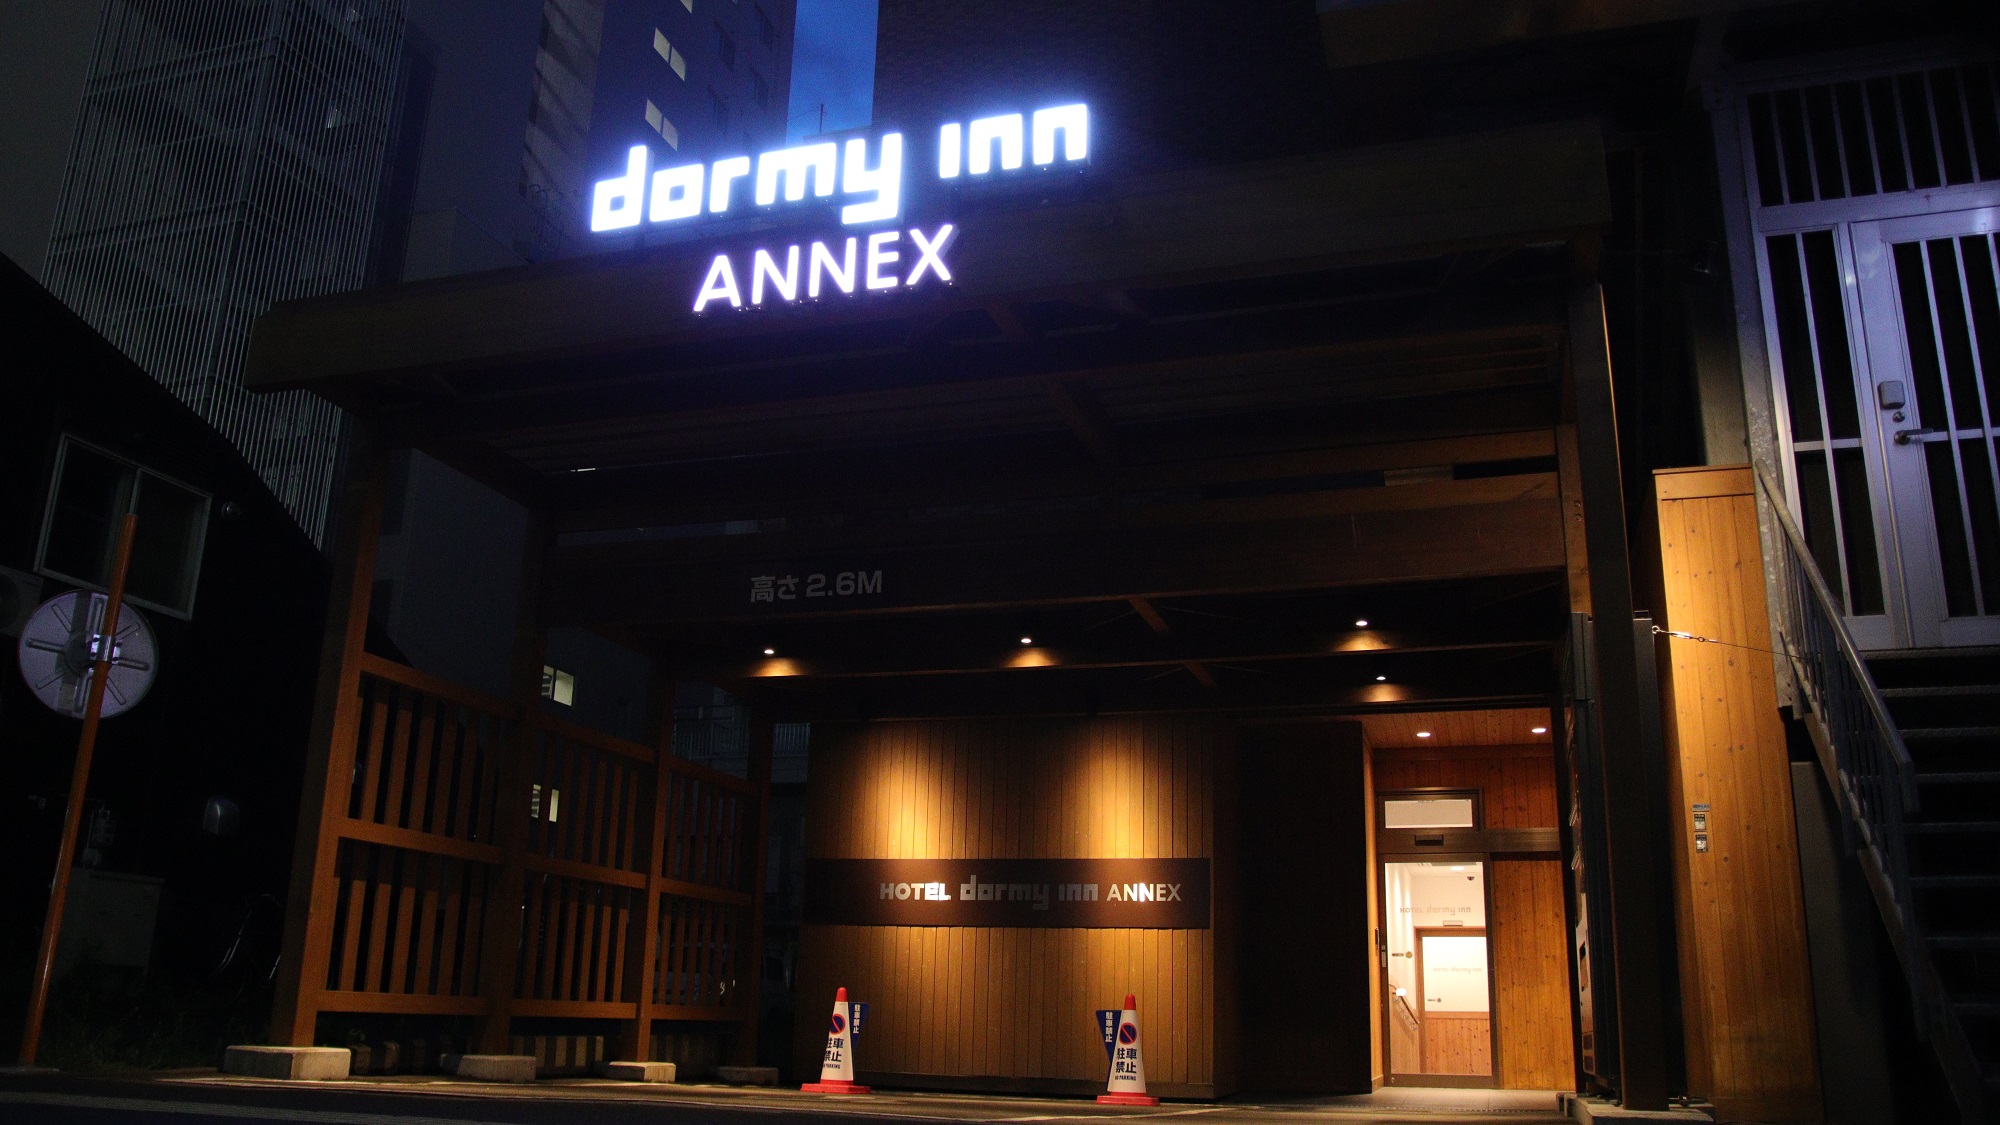 札幌 Annex Dormy Inn